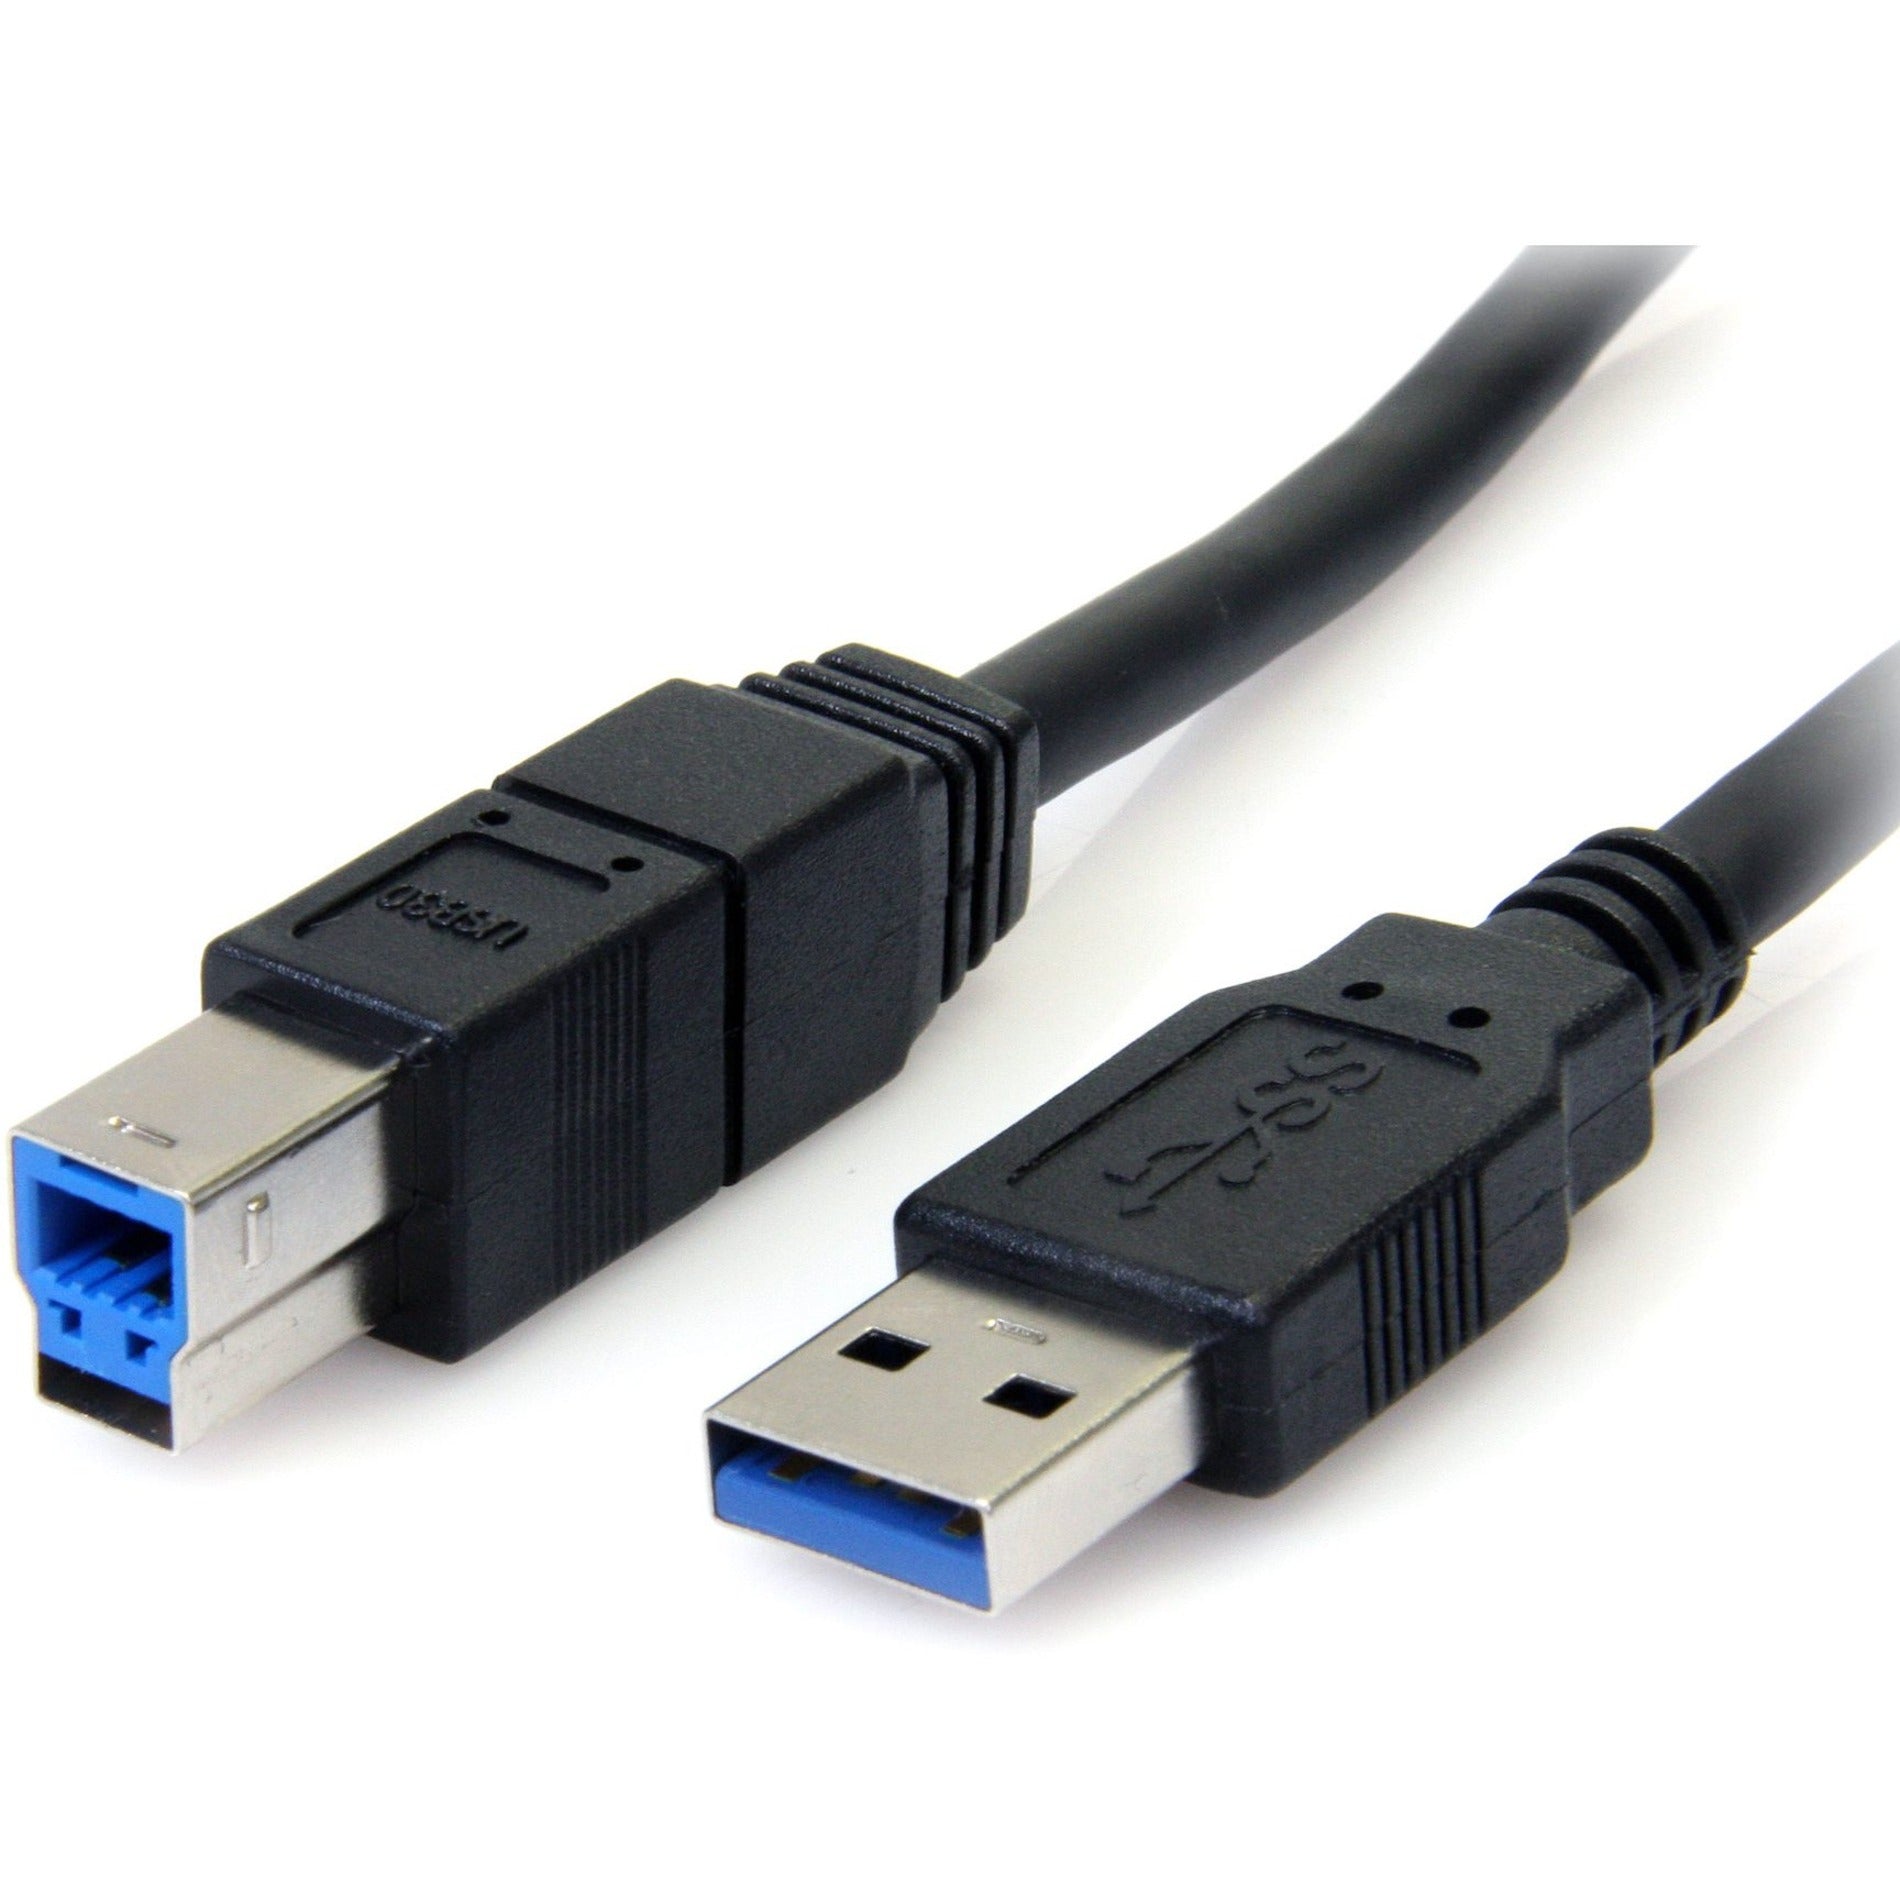 StarTech.com USB3SAB6BK 6 قدم كبل USB 3.0 أسود فائق السرعة A إلى B - ذكر إلى ذكر ، نقل البيانات بسرعة عالية ، ضمان مدى الحياة